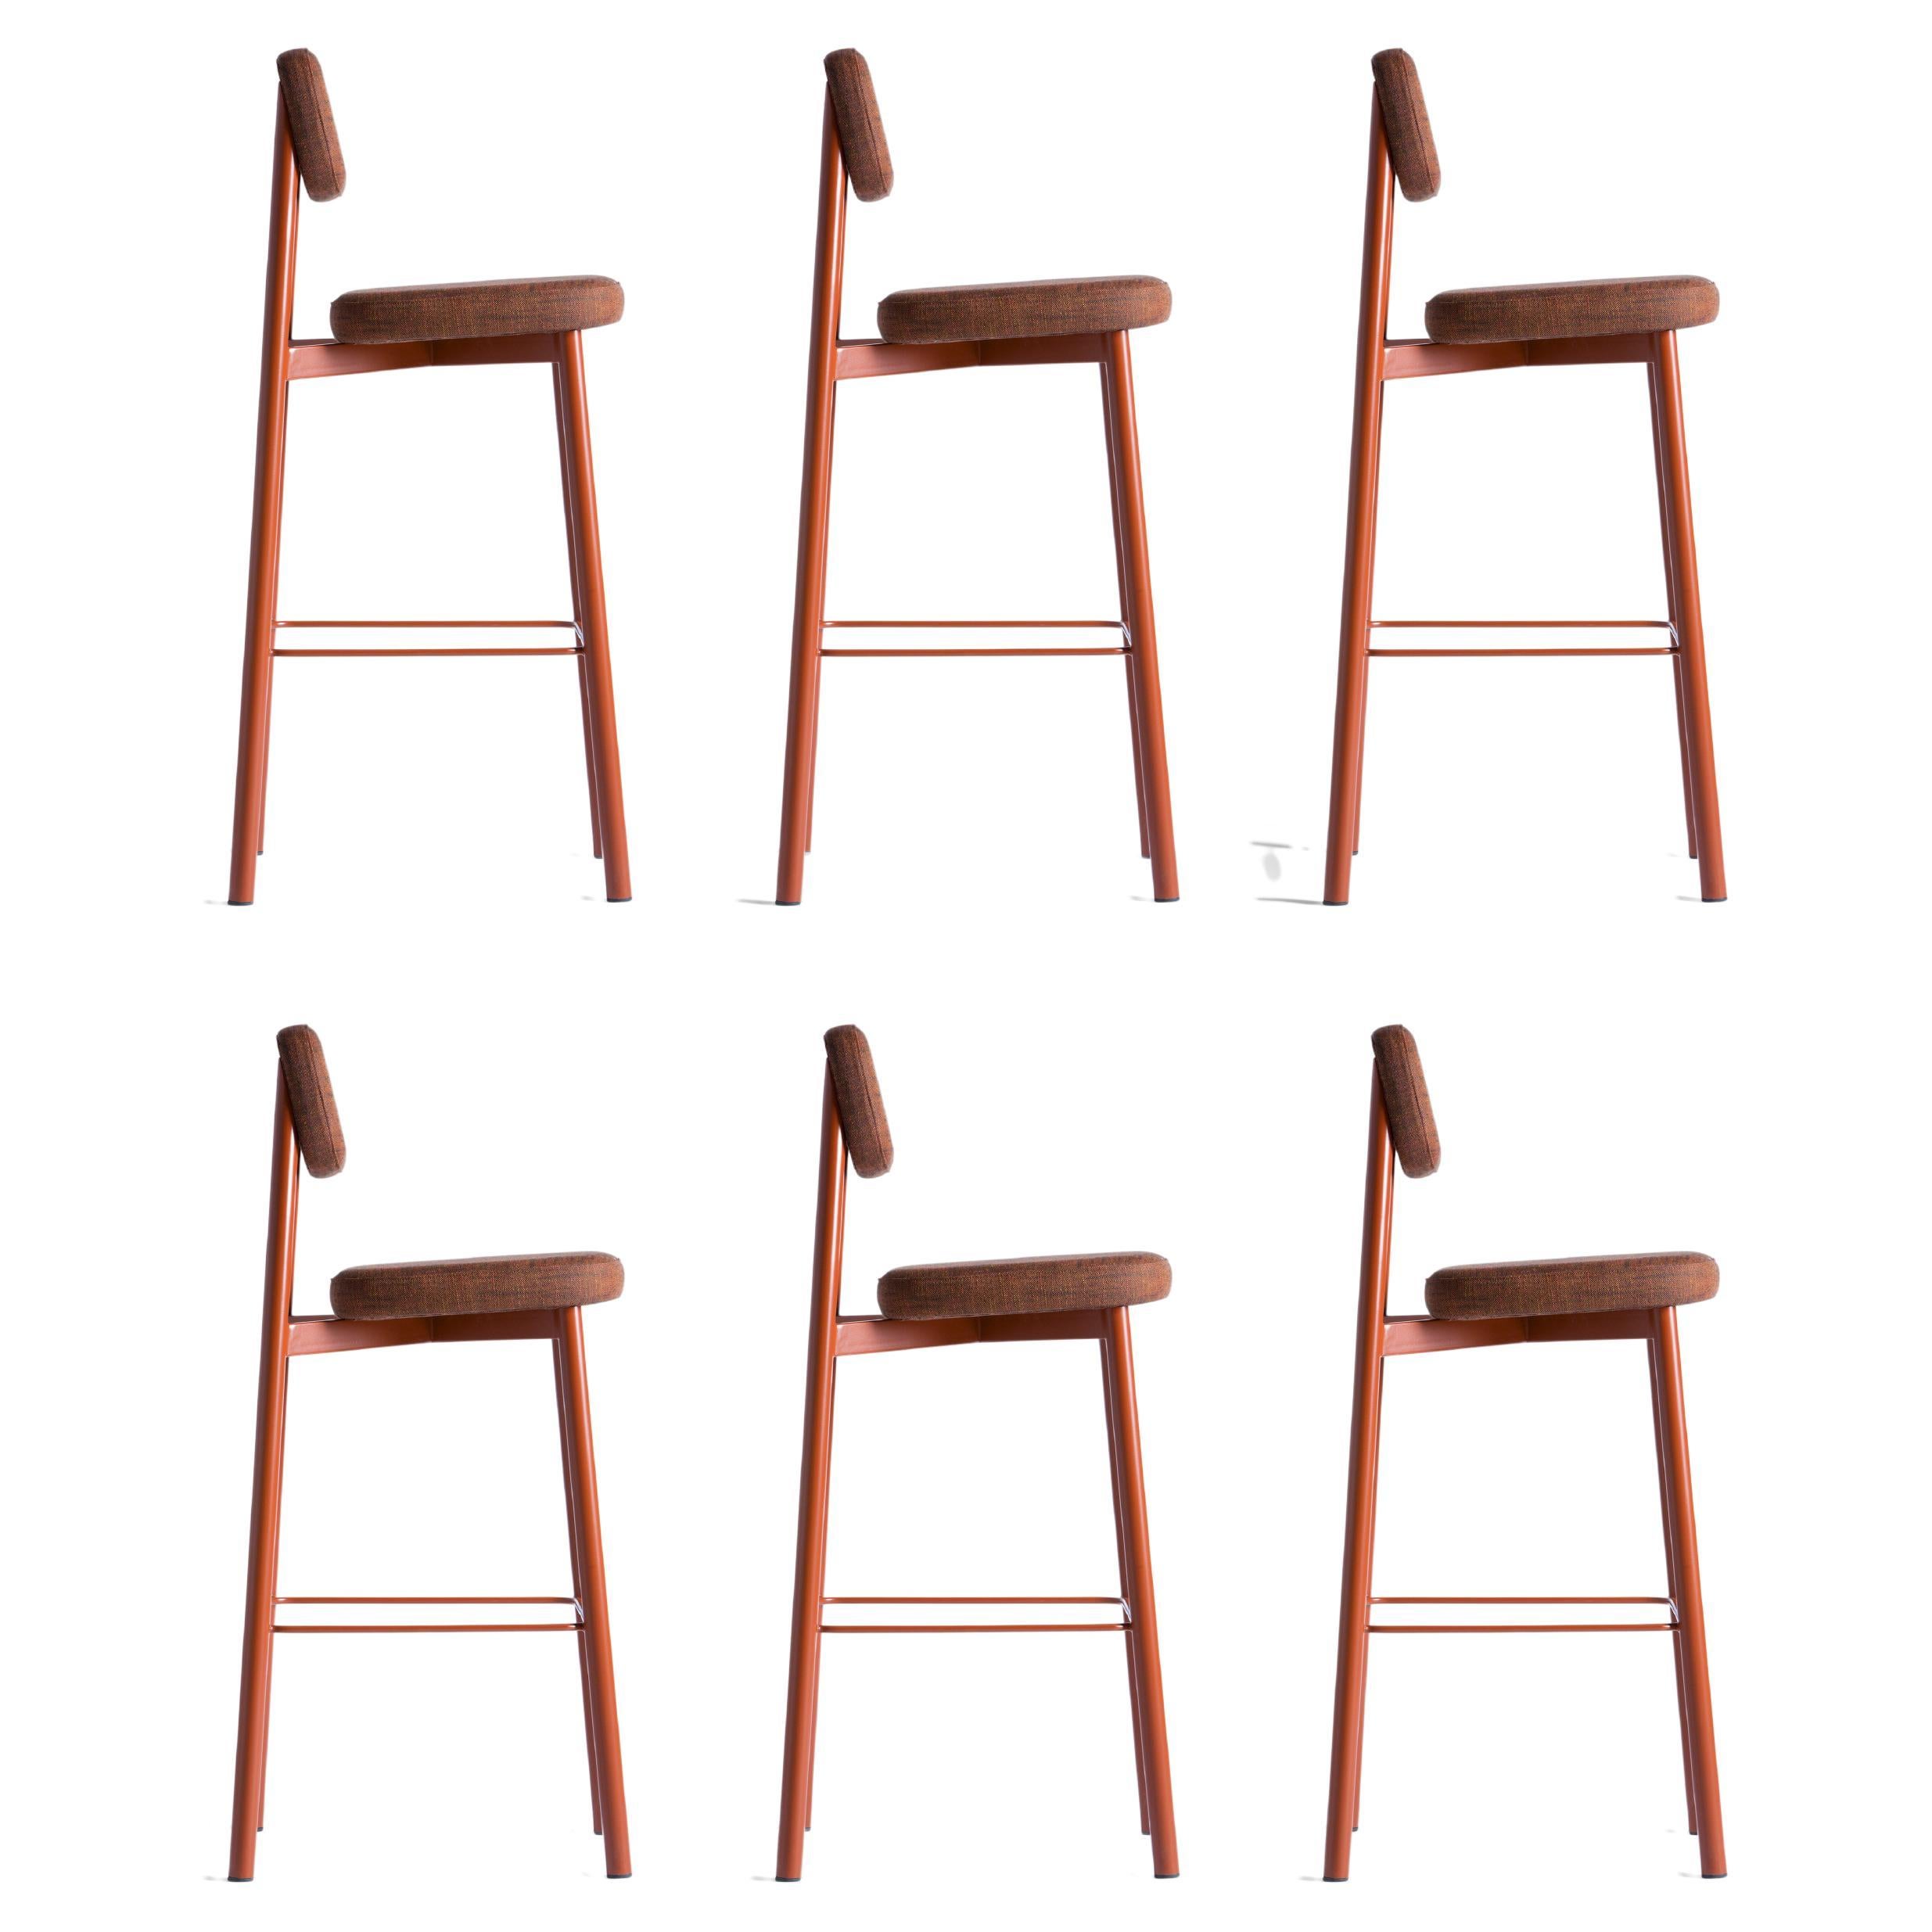 Ensemble de 6 chaises de comptoir de résidence 75 rouge brique par Kann Design